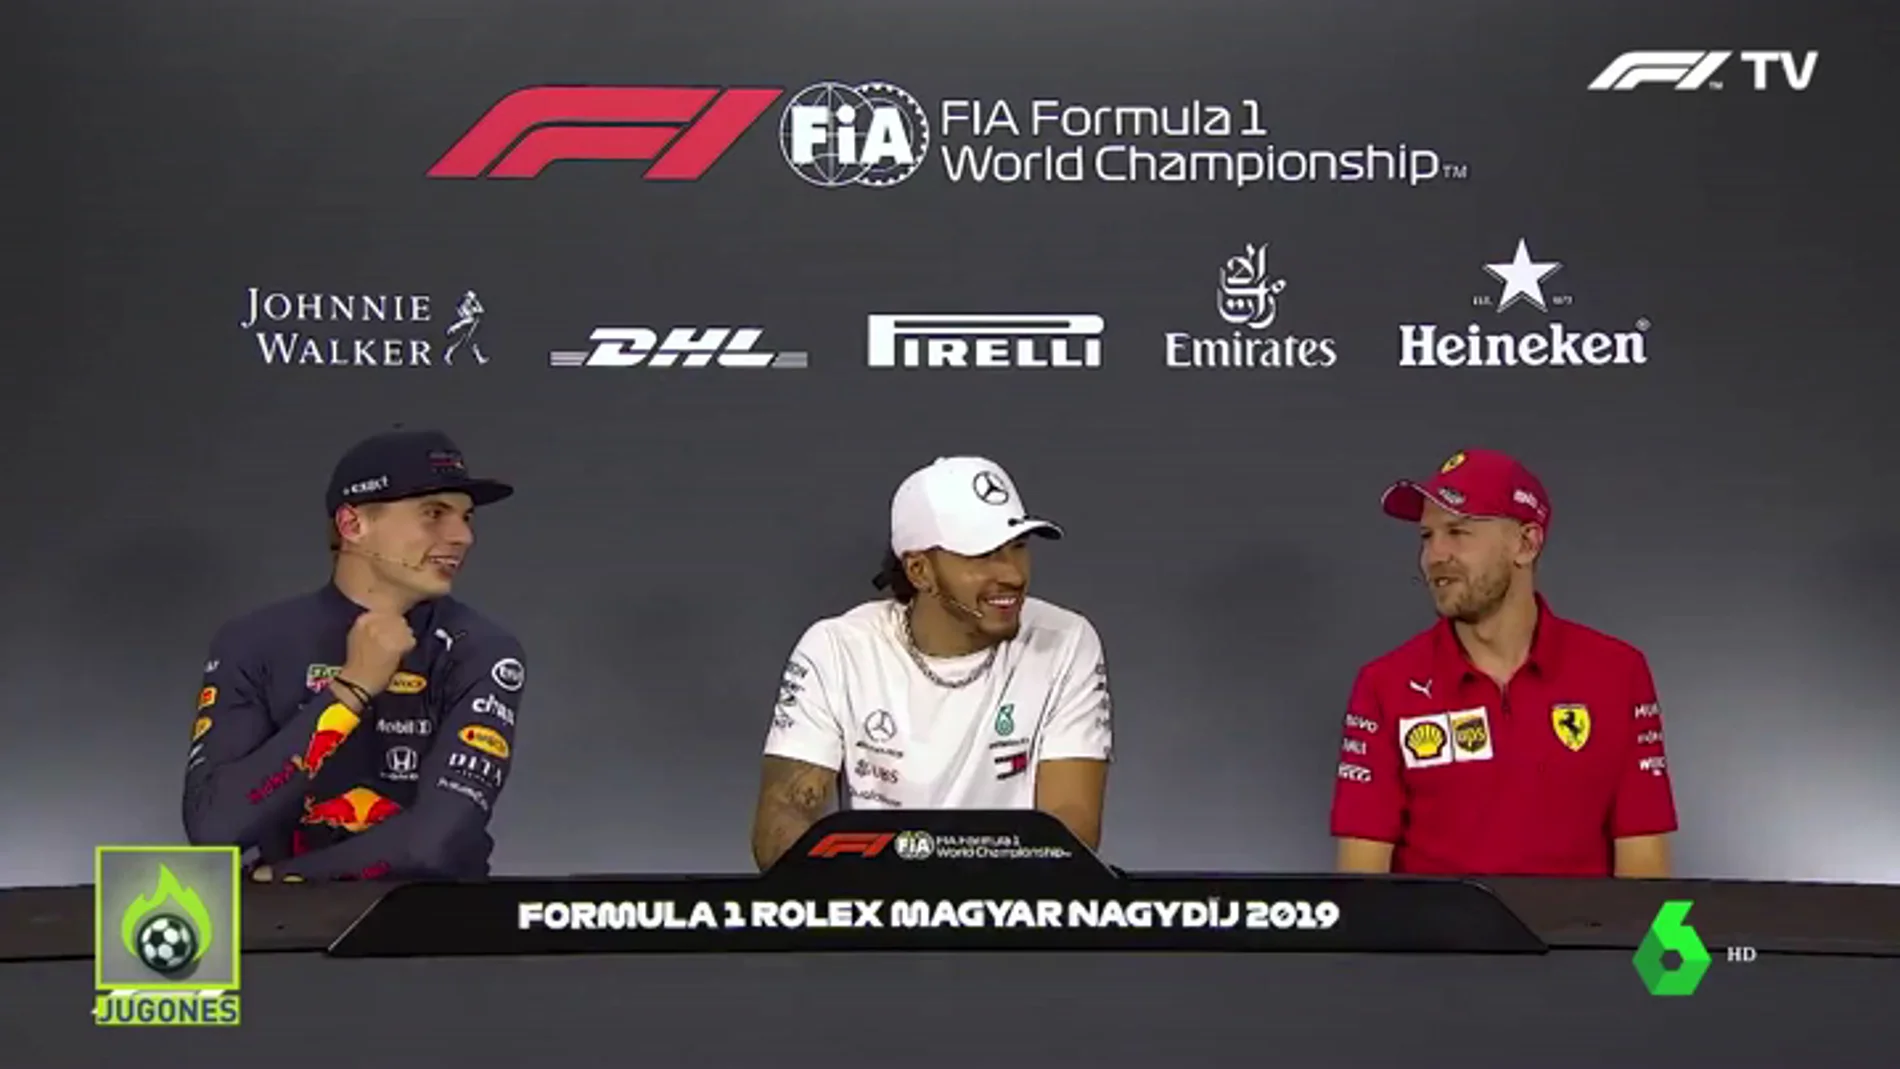 La conversación de Hamilton, Vettel y Verstappen... con Fernando Alonso como protagonista: "Creo que nunca le he caído bien"